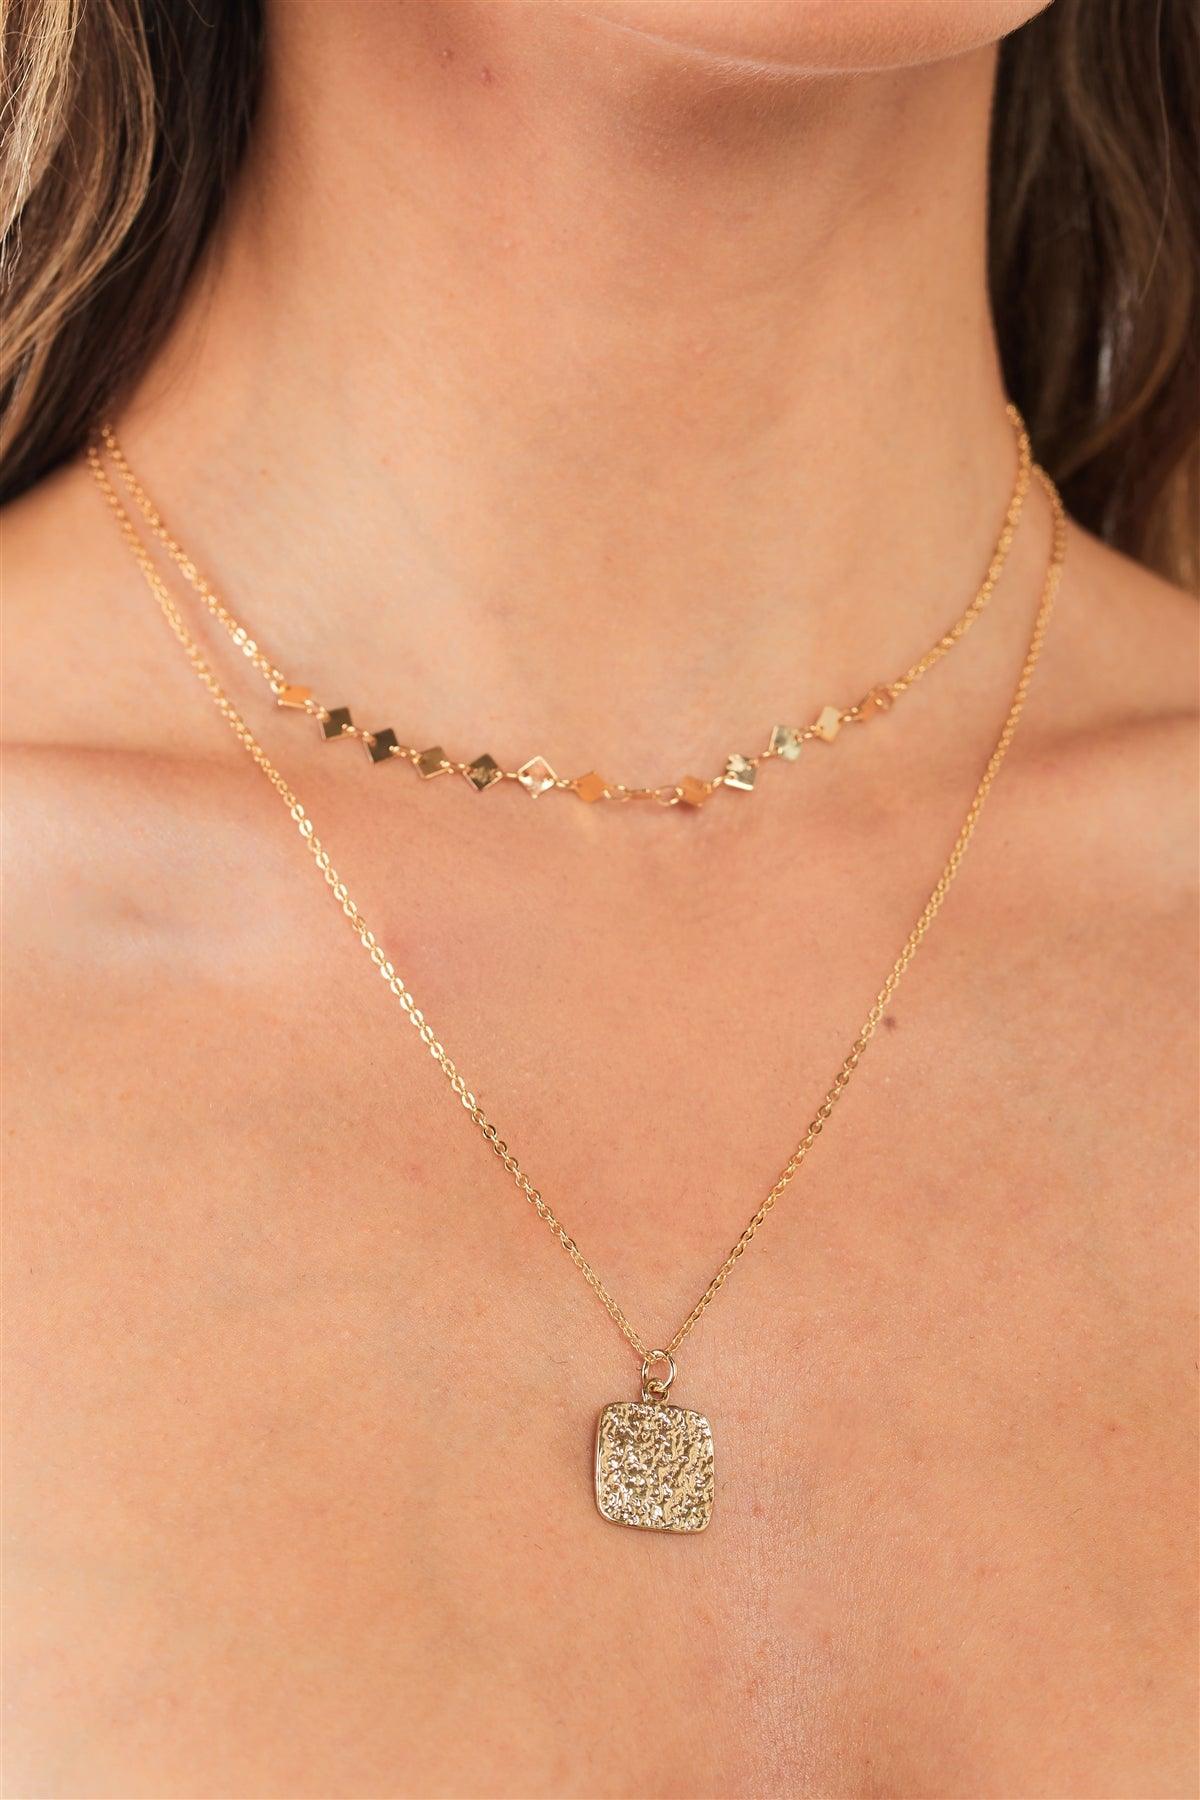 Artemis Textured Gold Square Charm Detail Pendant Necklace /3 Pieces